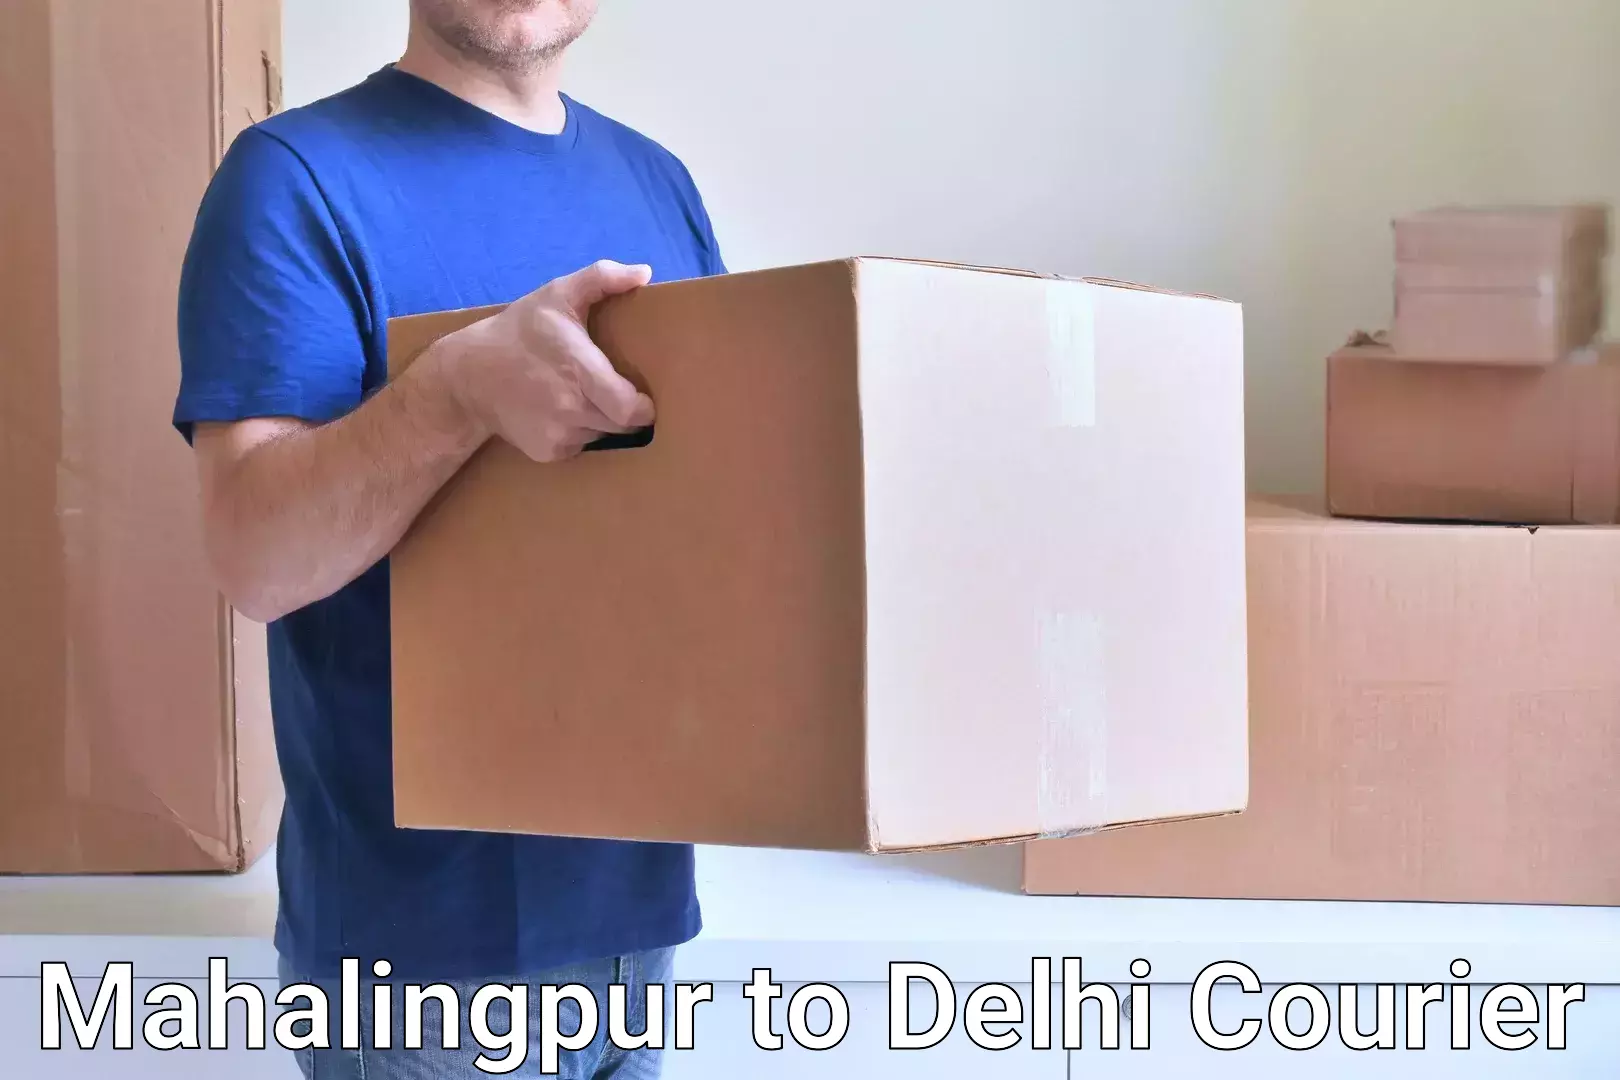 Individual parcel service Mahalingpur to East Delhi